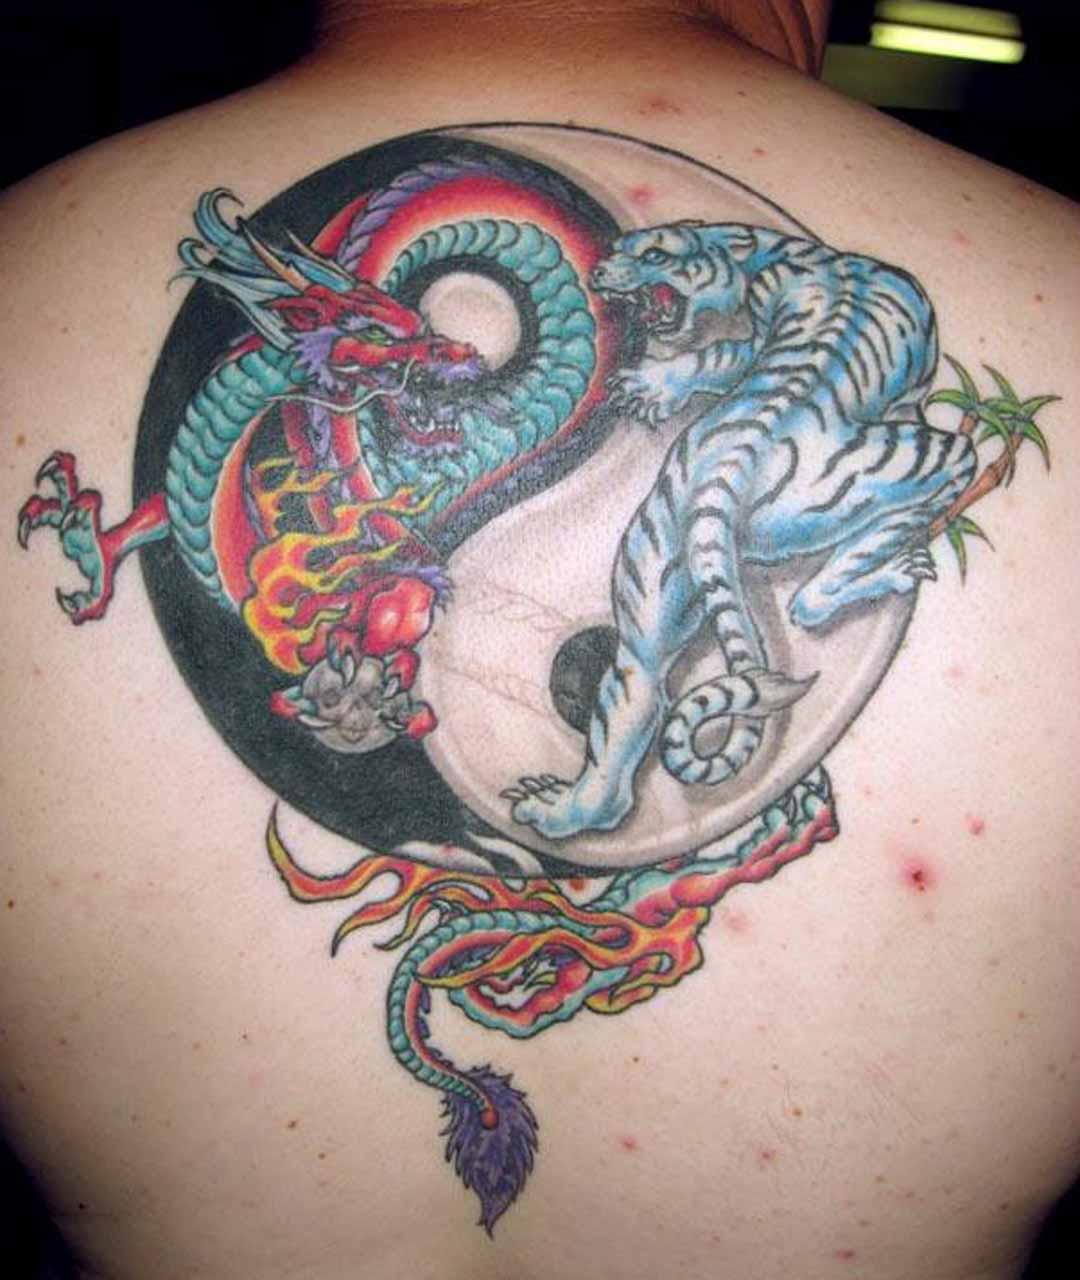 Tatuaggio colorato i dragoni & il disegno in stile Yin-Yang